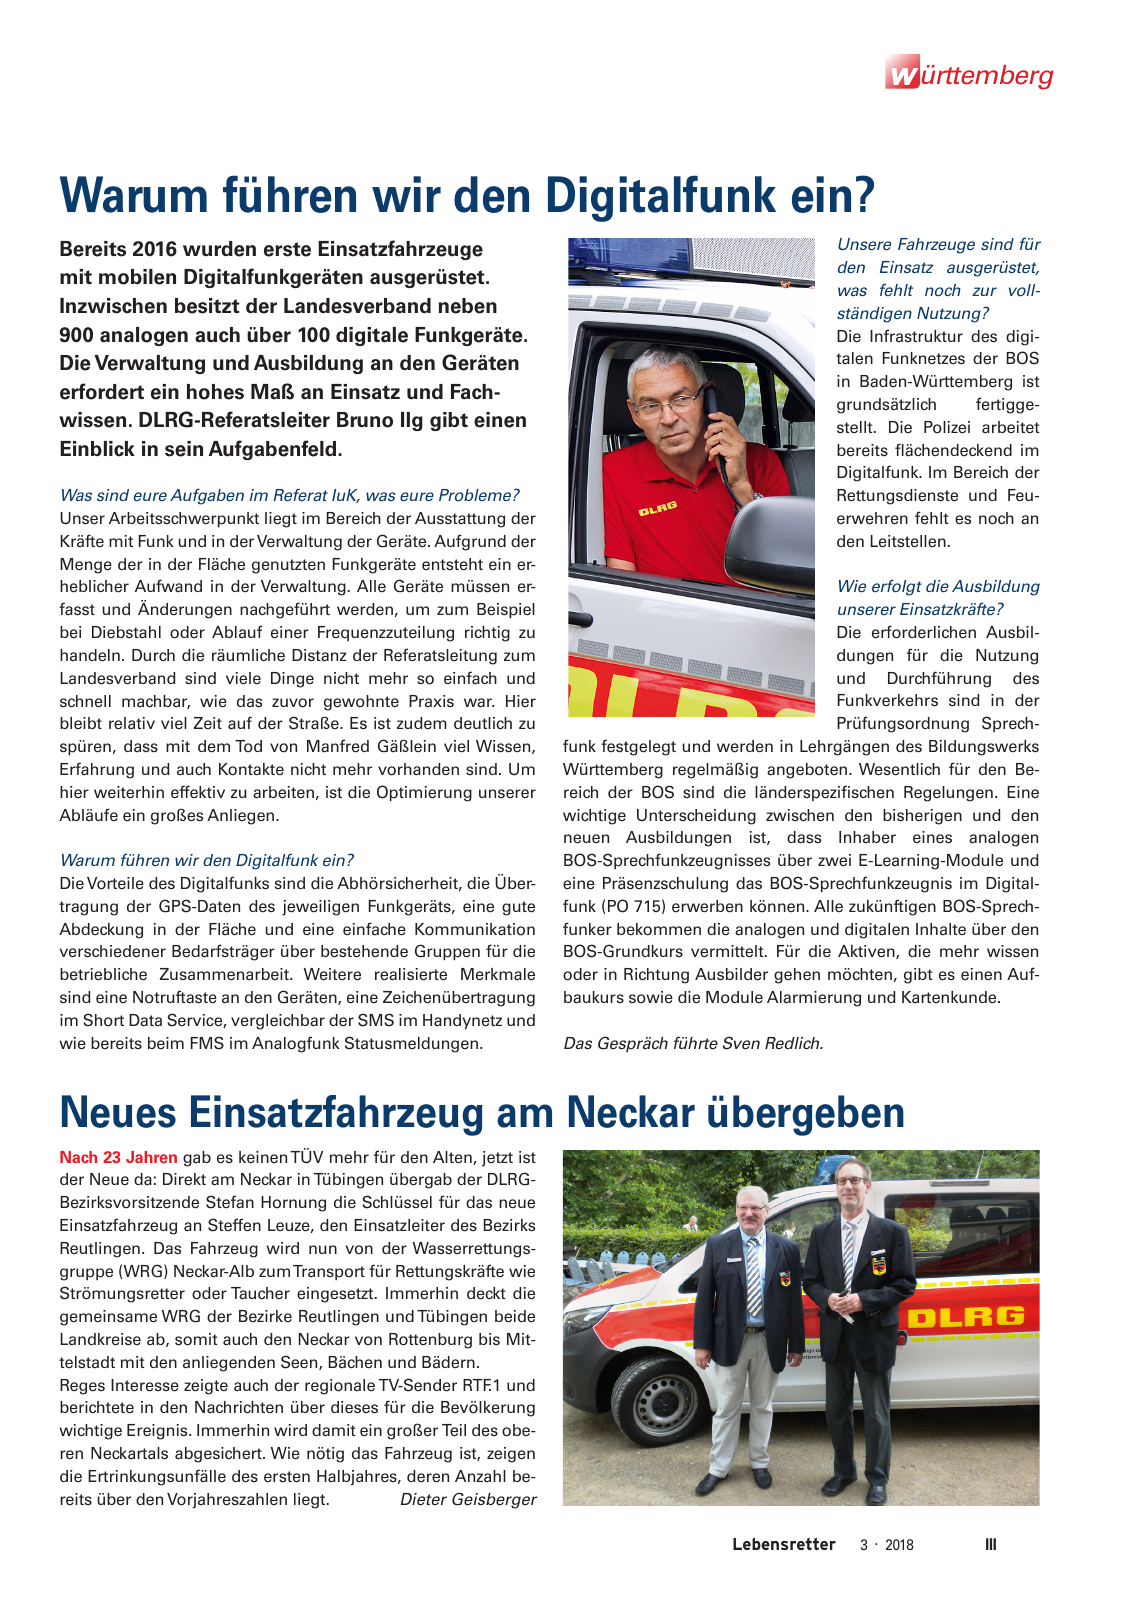 Vorschau Lebensretter 3/2018 - Regionalausgabe Württemberg Seite 5